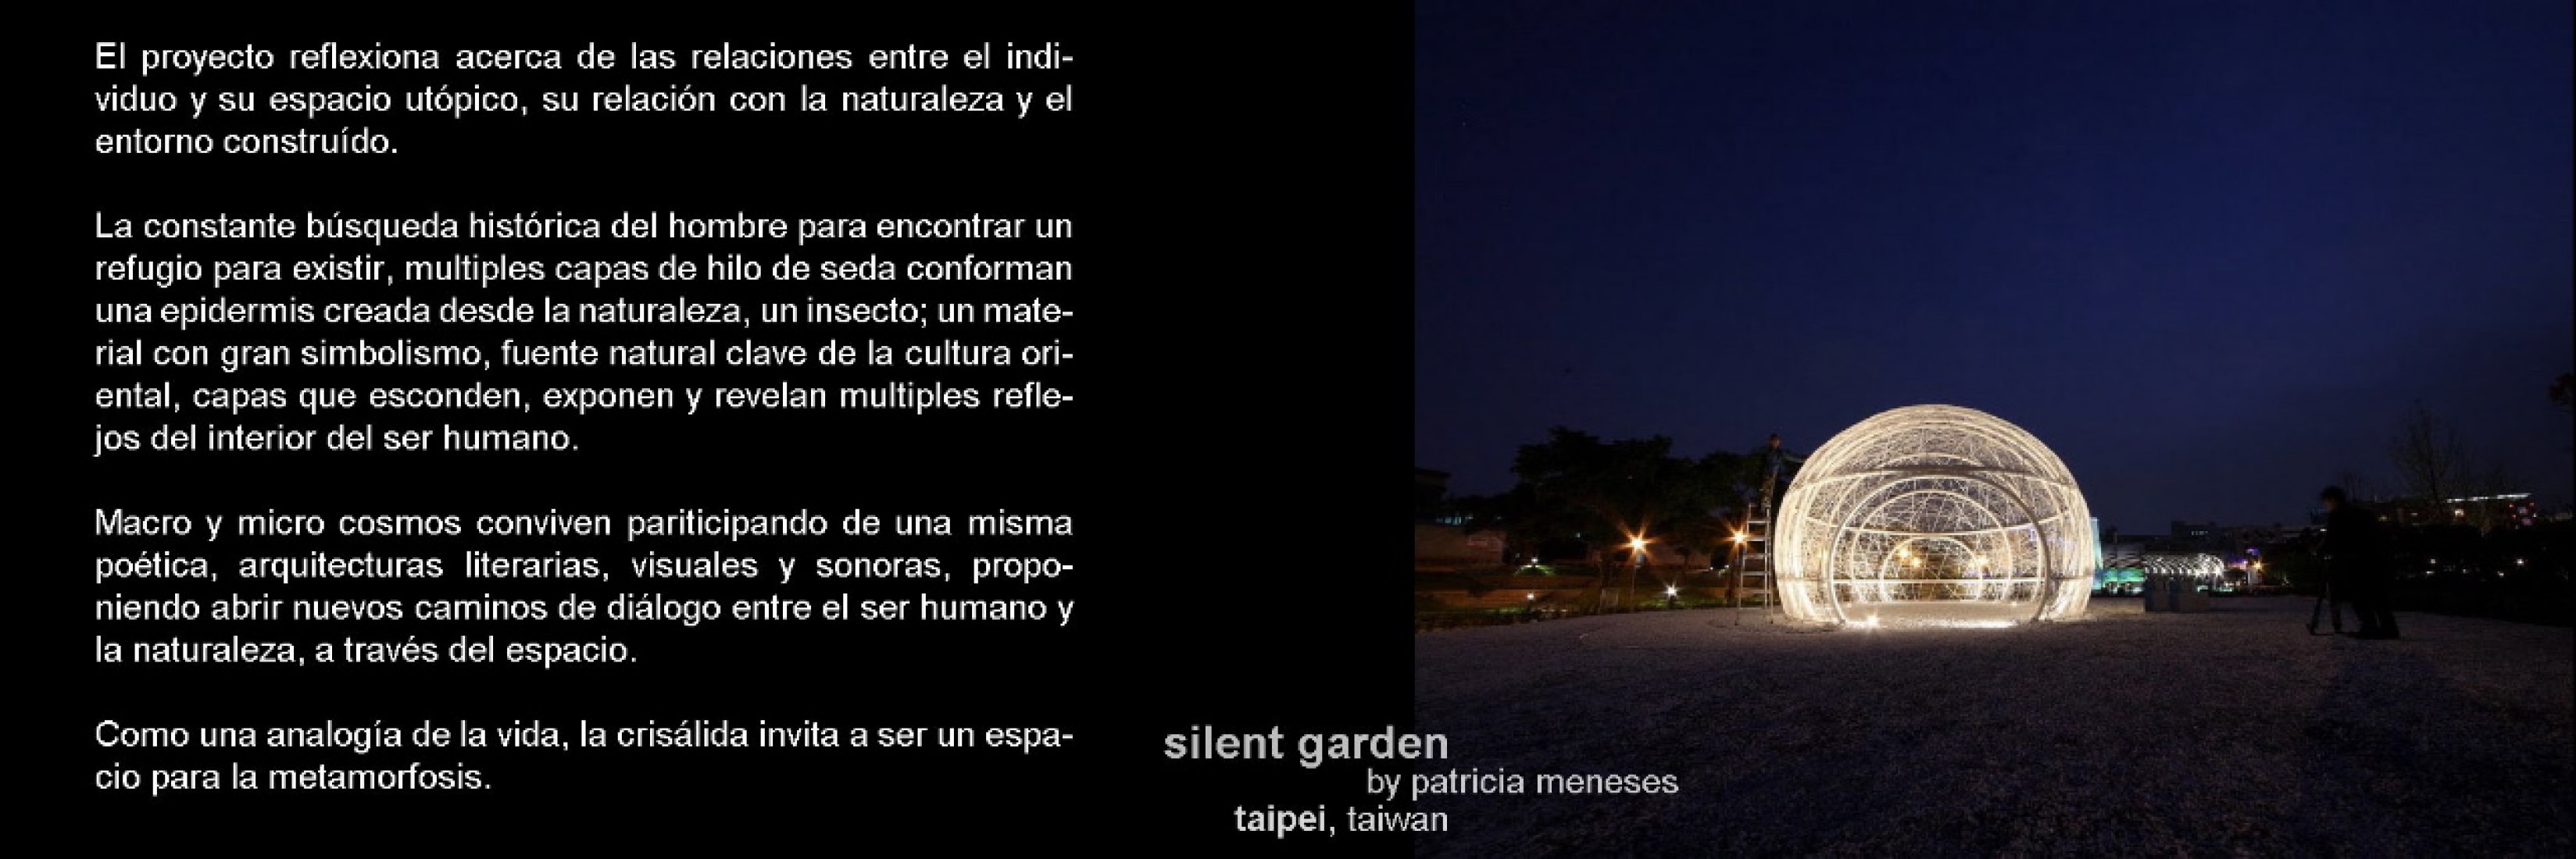 Silent Gardens por Patricia Meneses.